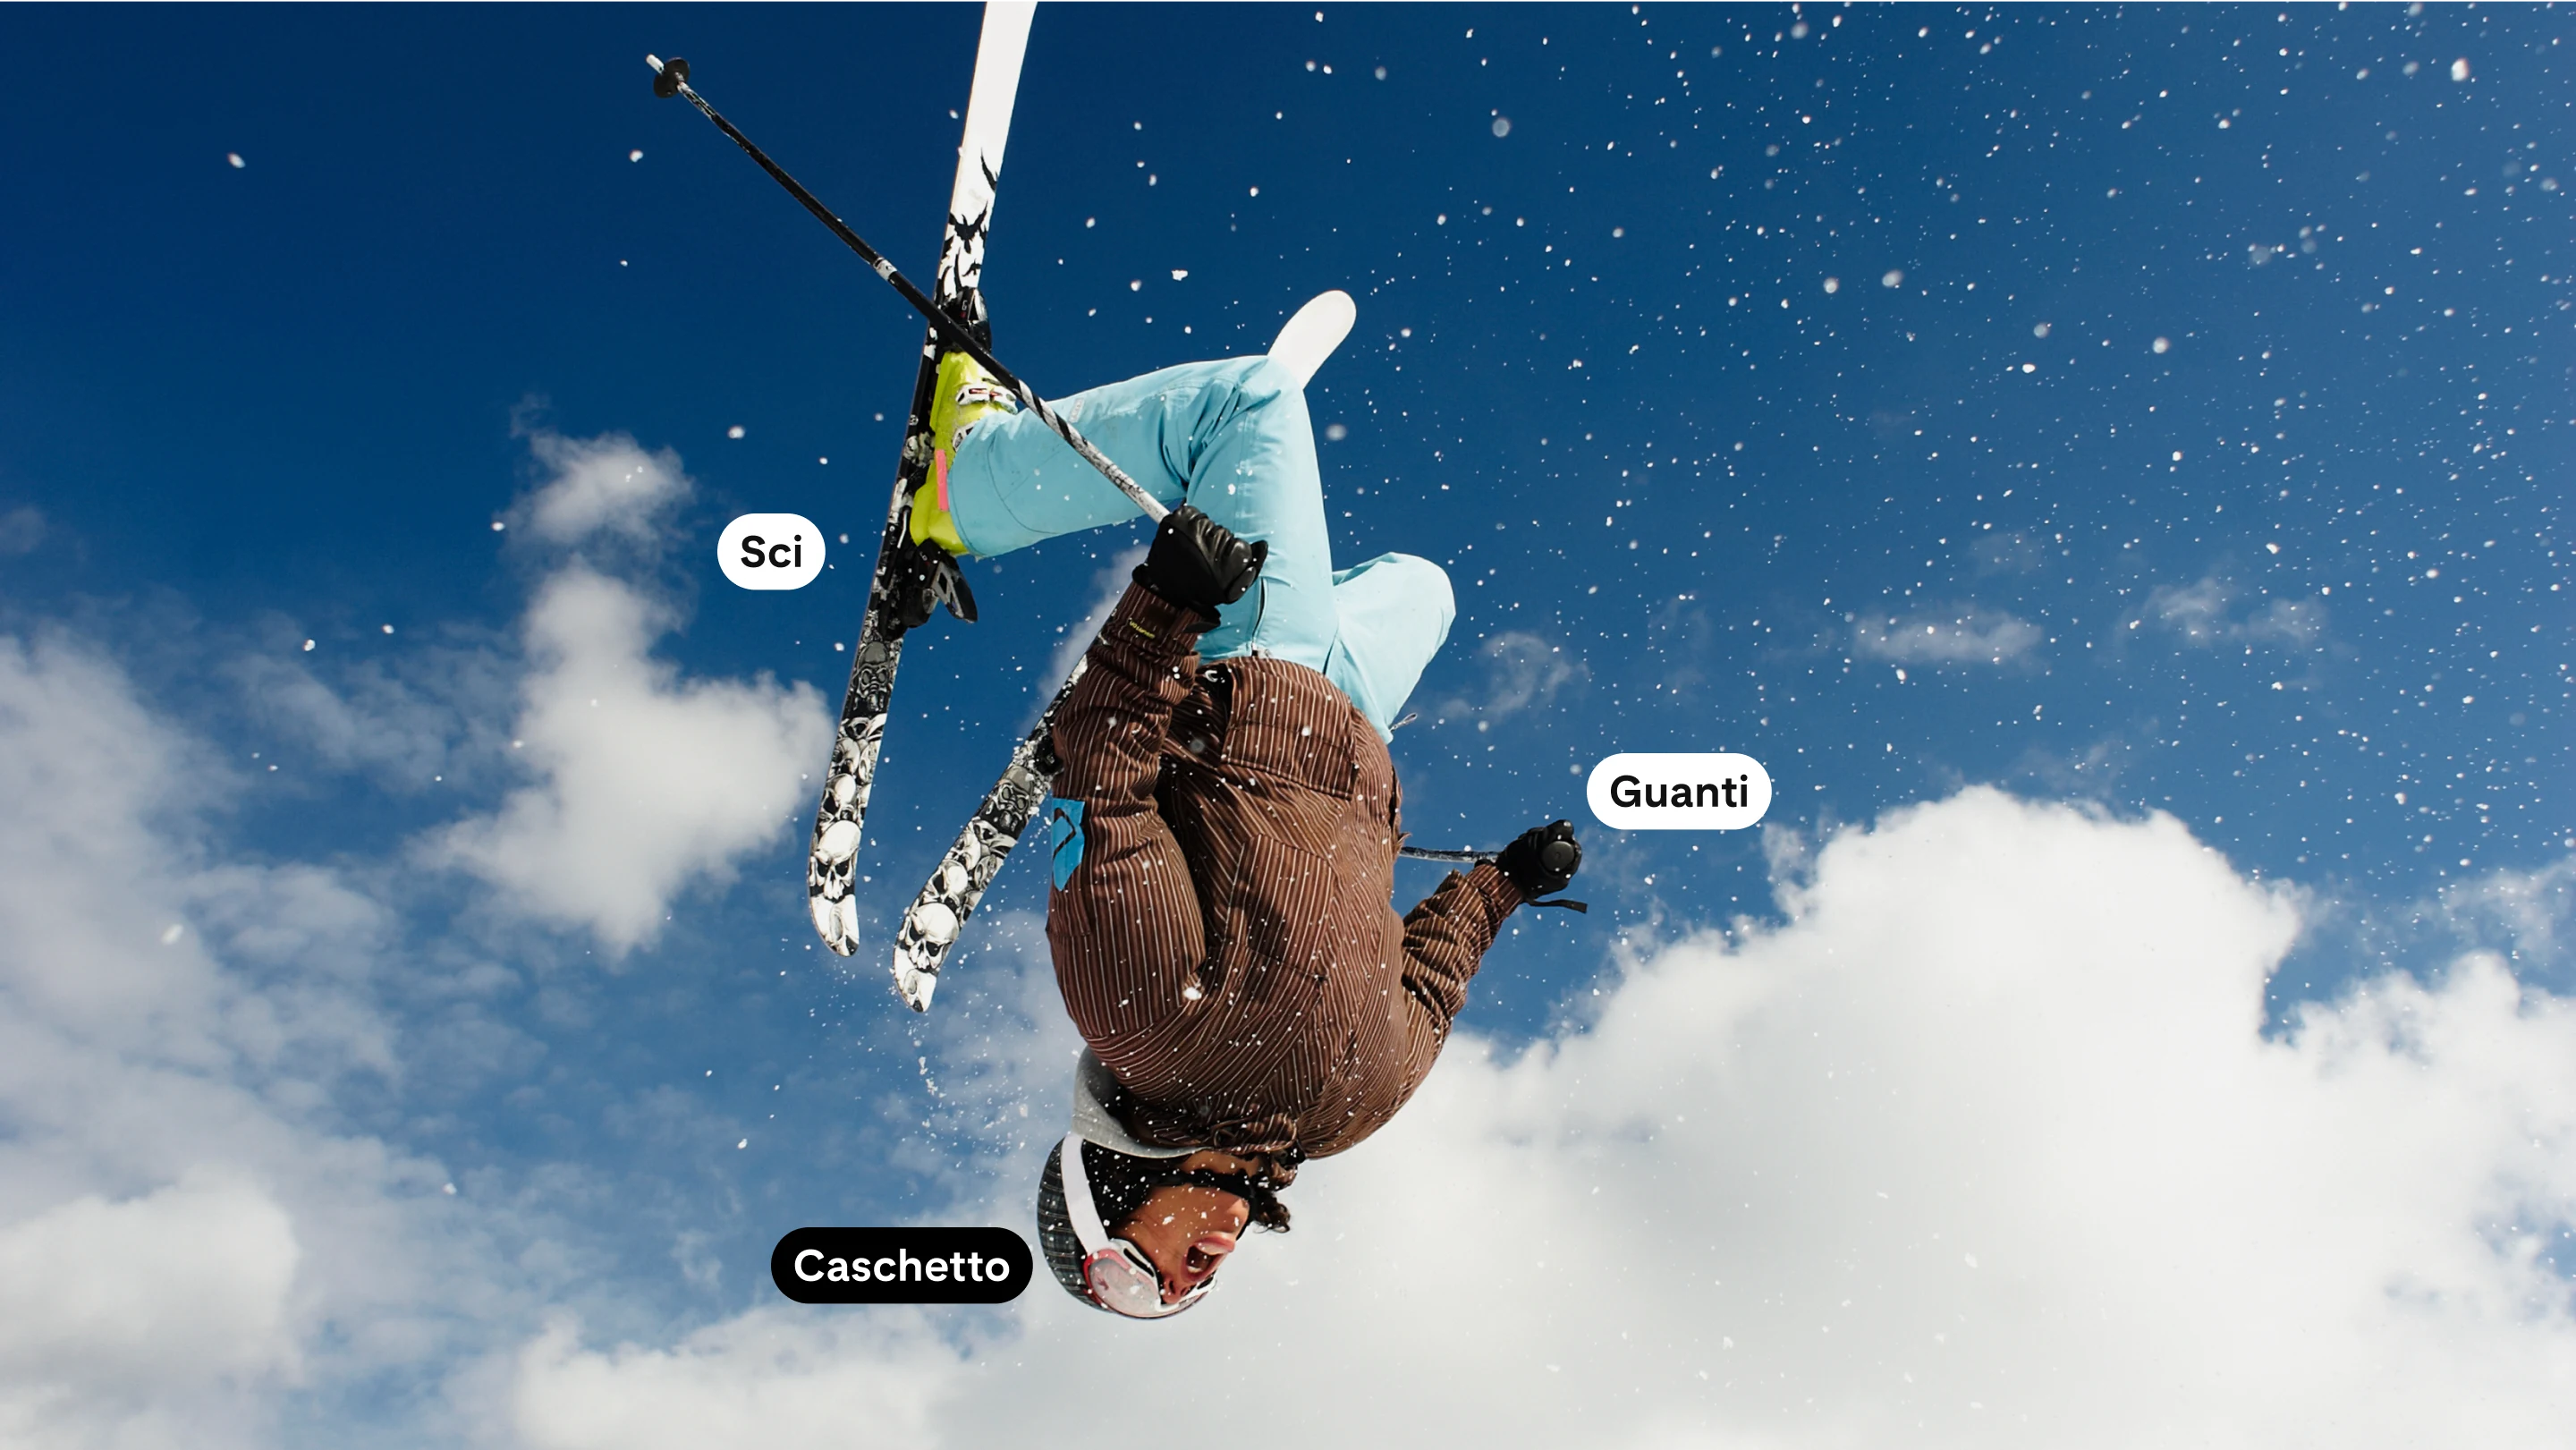 Immagine a larghezza massima raffigurante una donna in tuta da sci che fa un backflip.